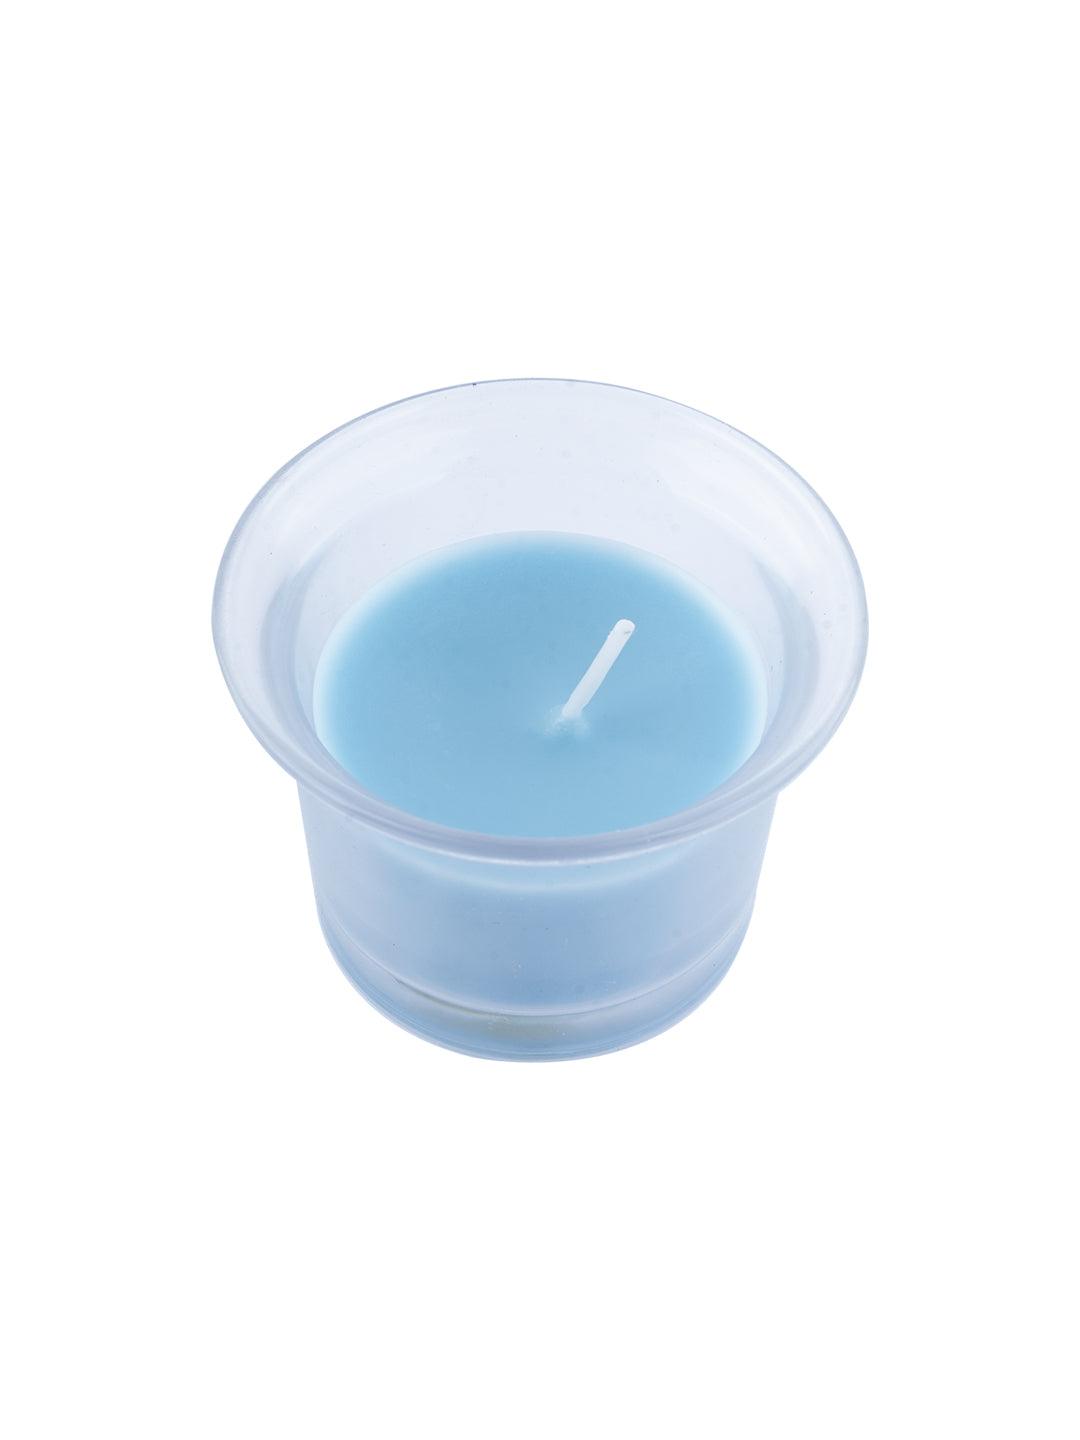 Fragrance Votive Candles (Pack Of 3) - Market99 - MARKET 99